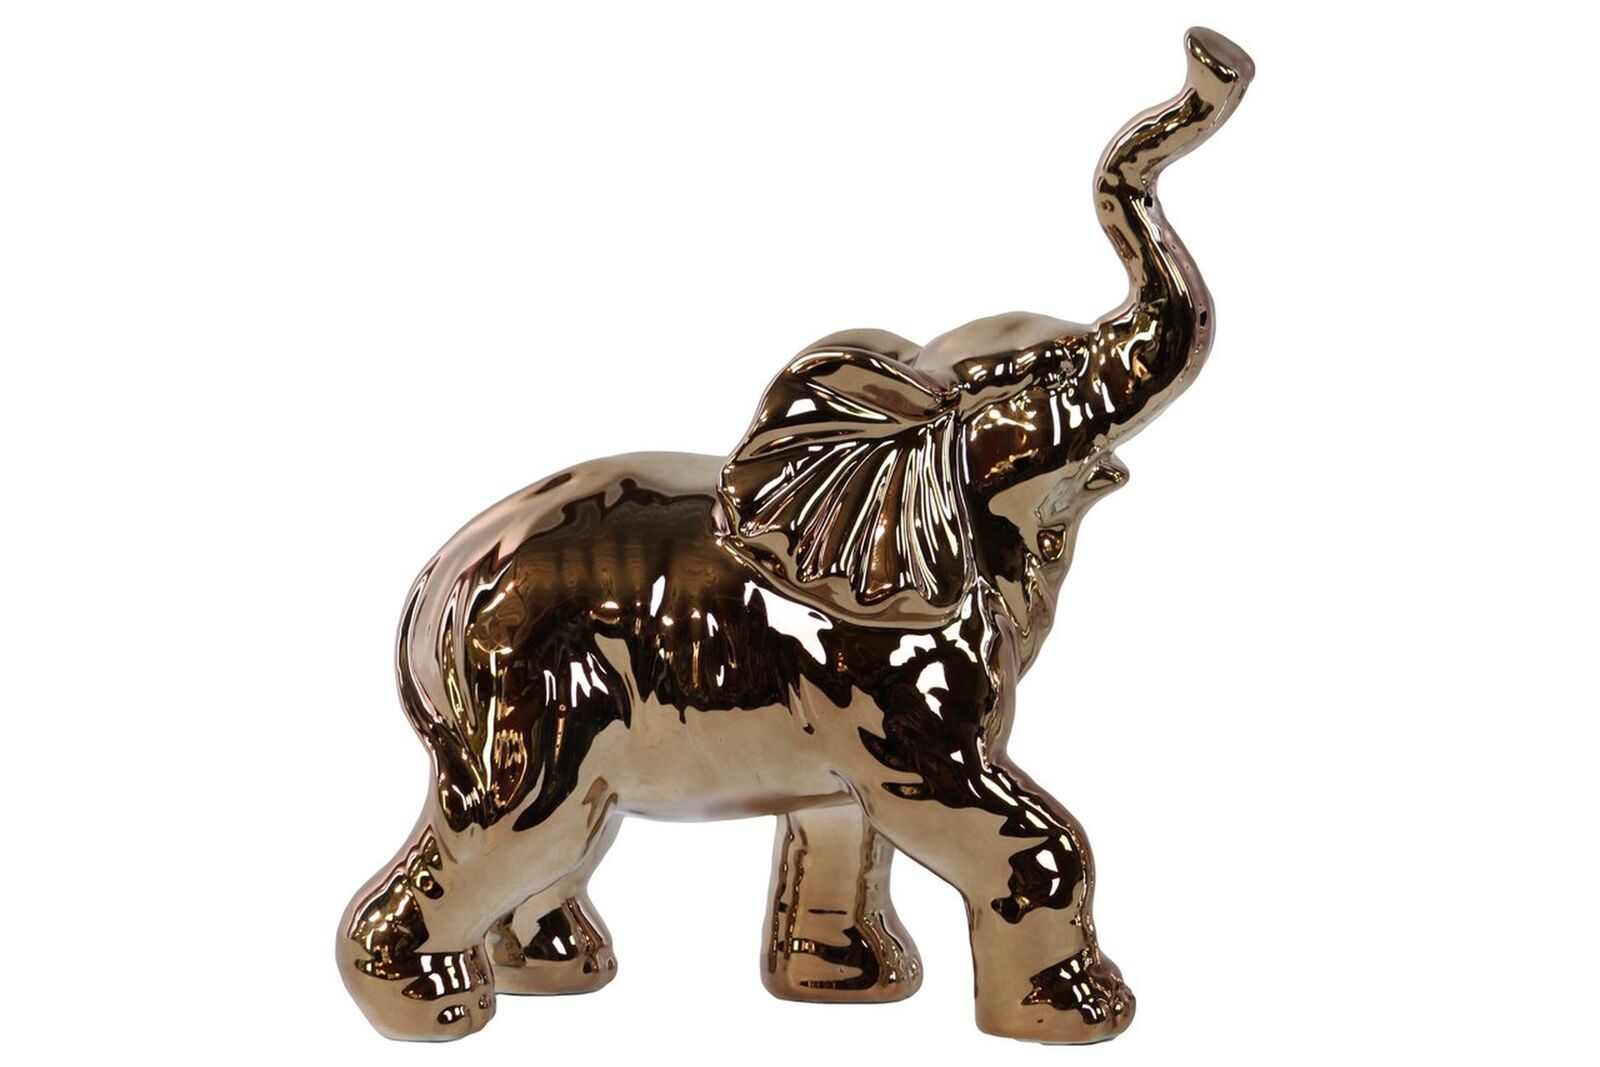 Porcelain Walking Trumpeting Elephant Figurine Polished Chrome Finish Gold 7inch